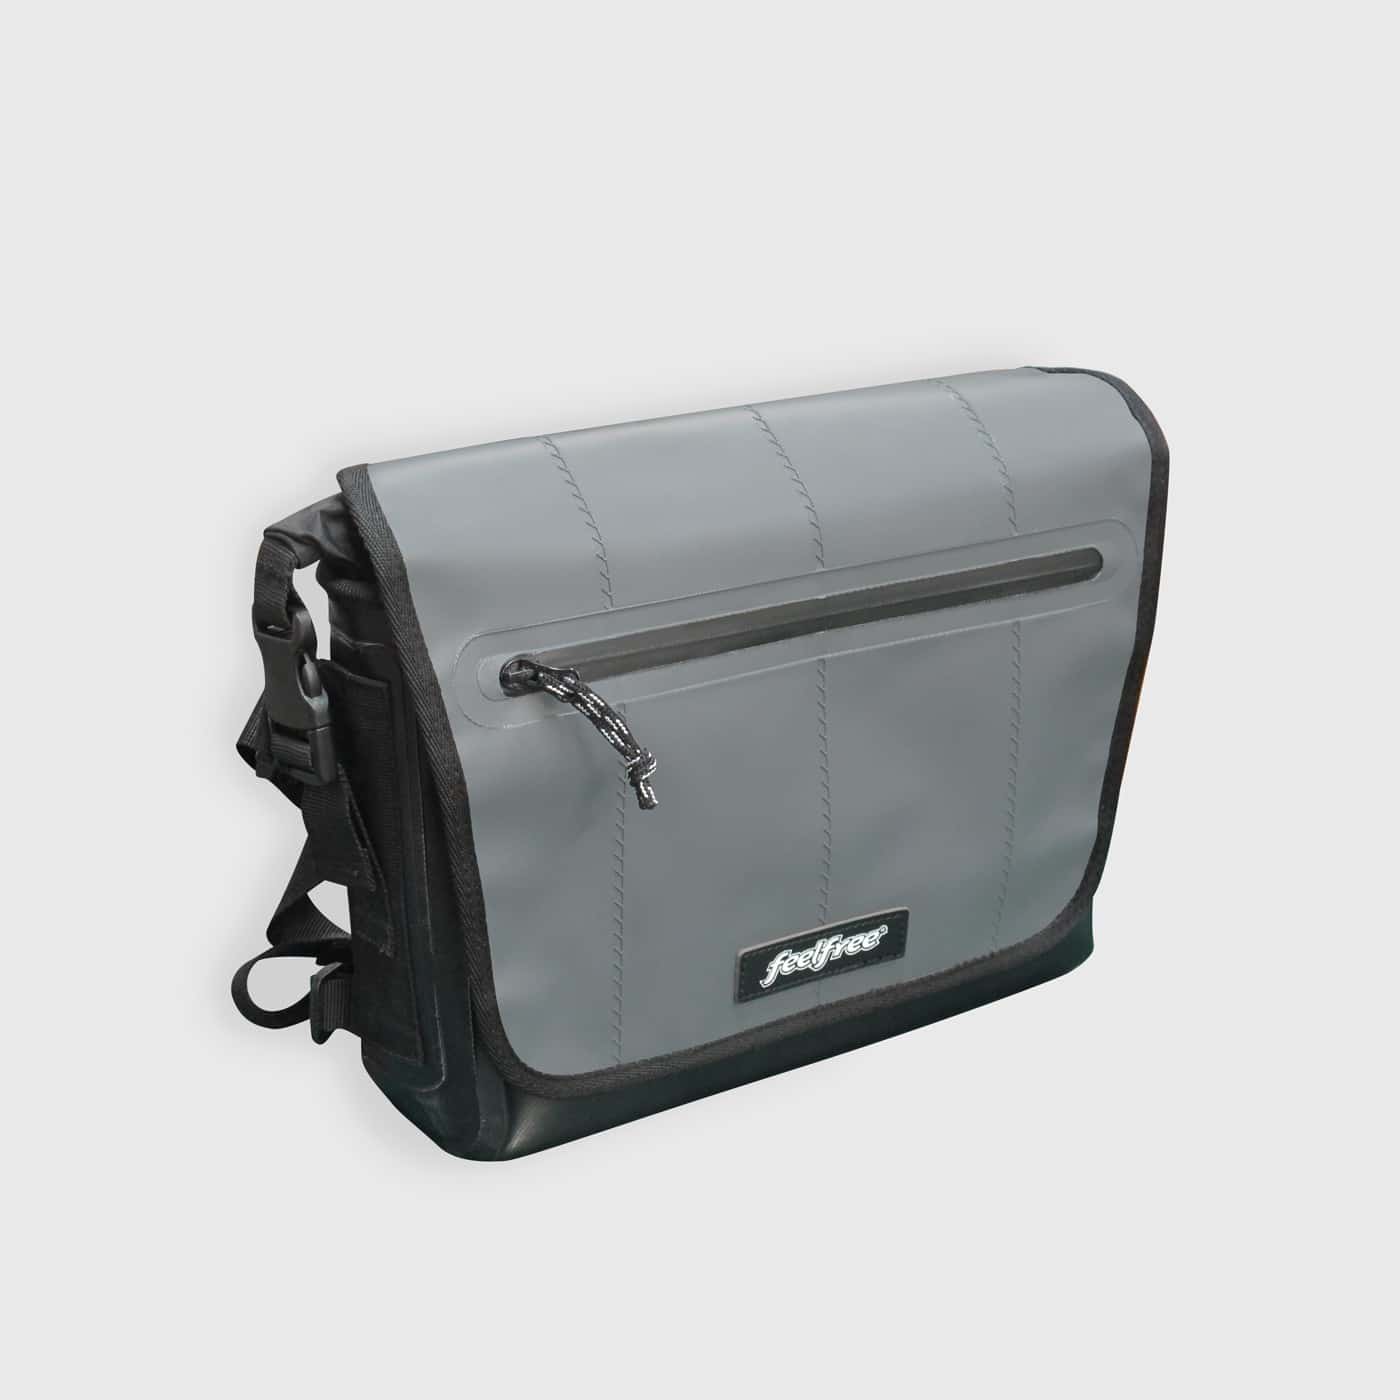 Freerunner EX waterproof bag